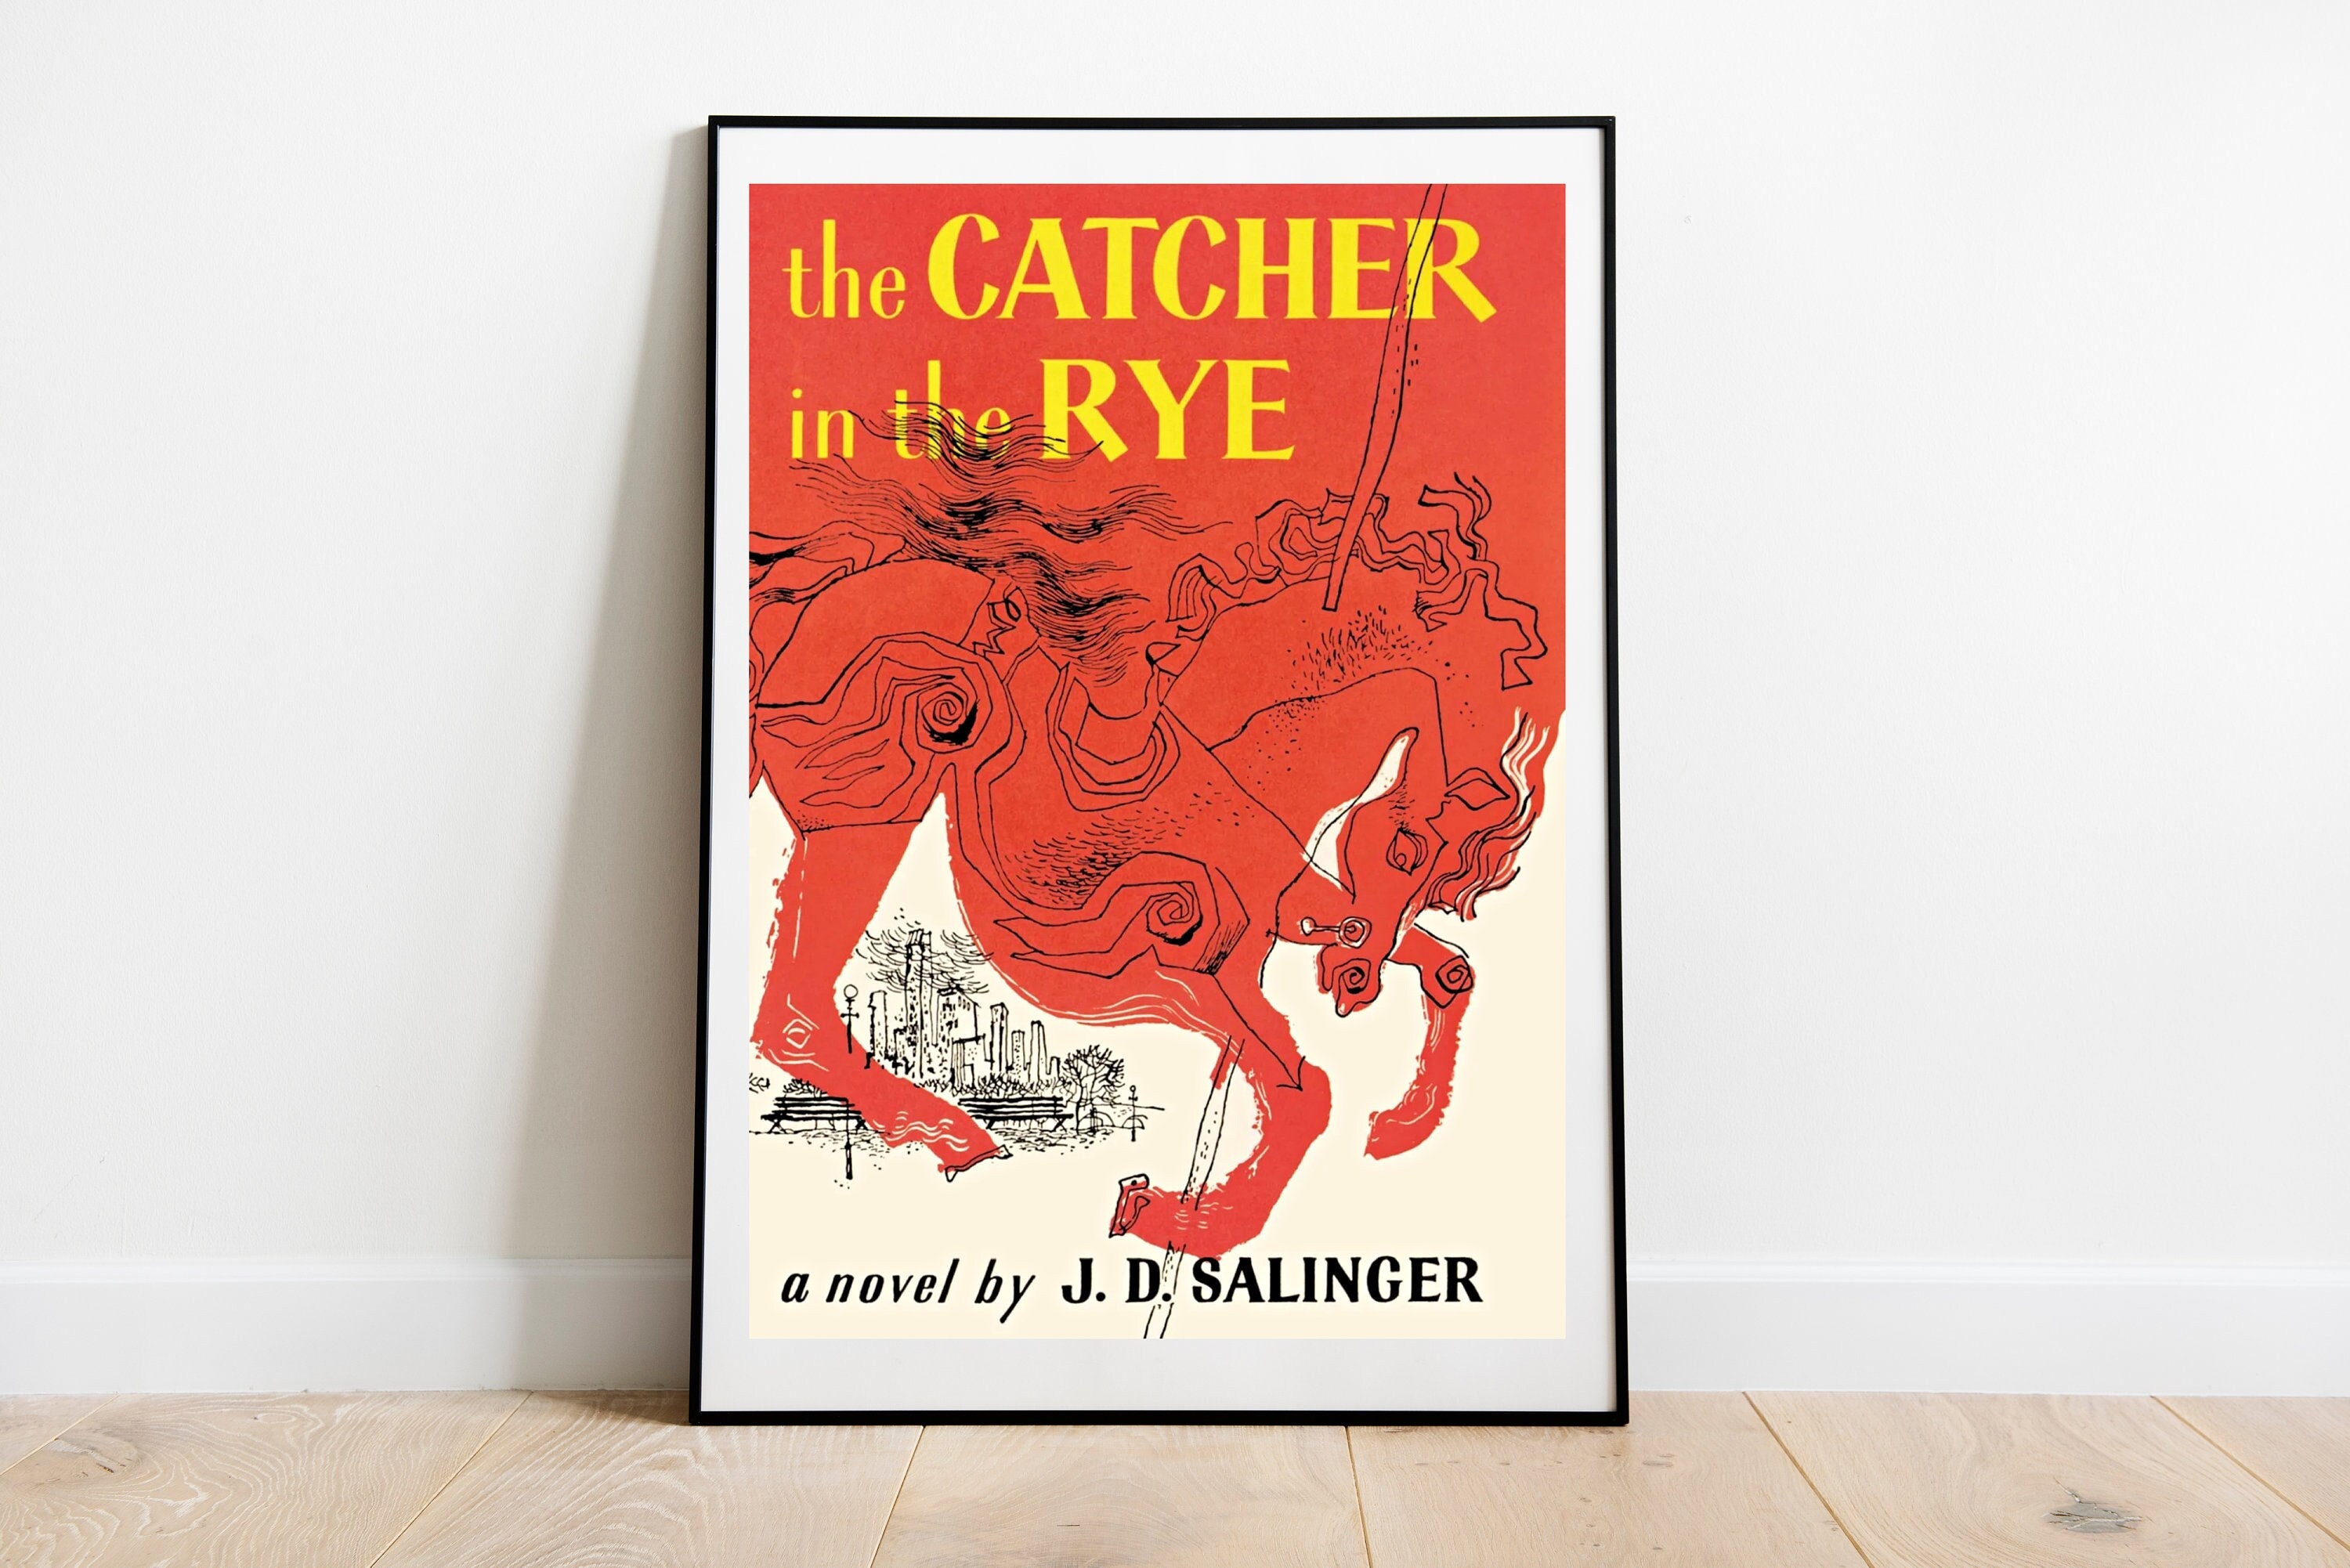 Livre l'attrape cœur de JD Salinger